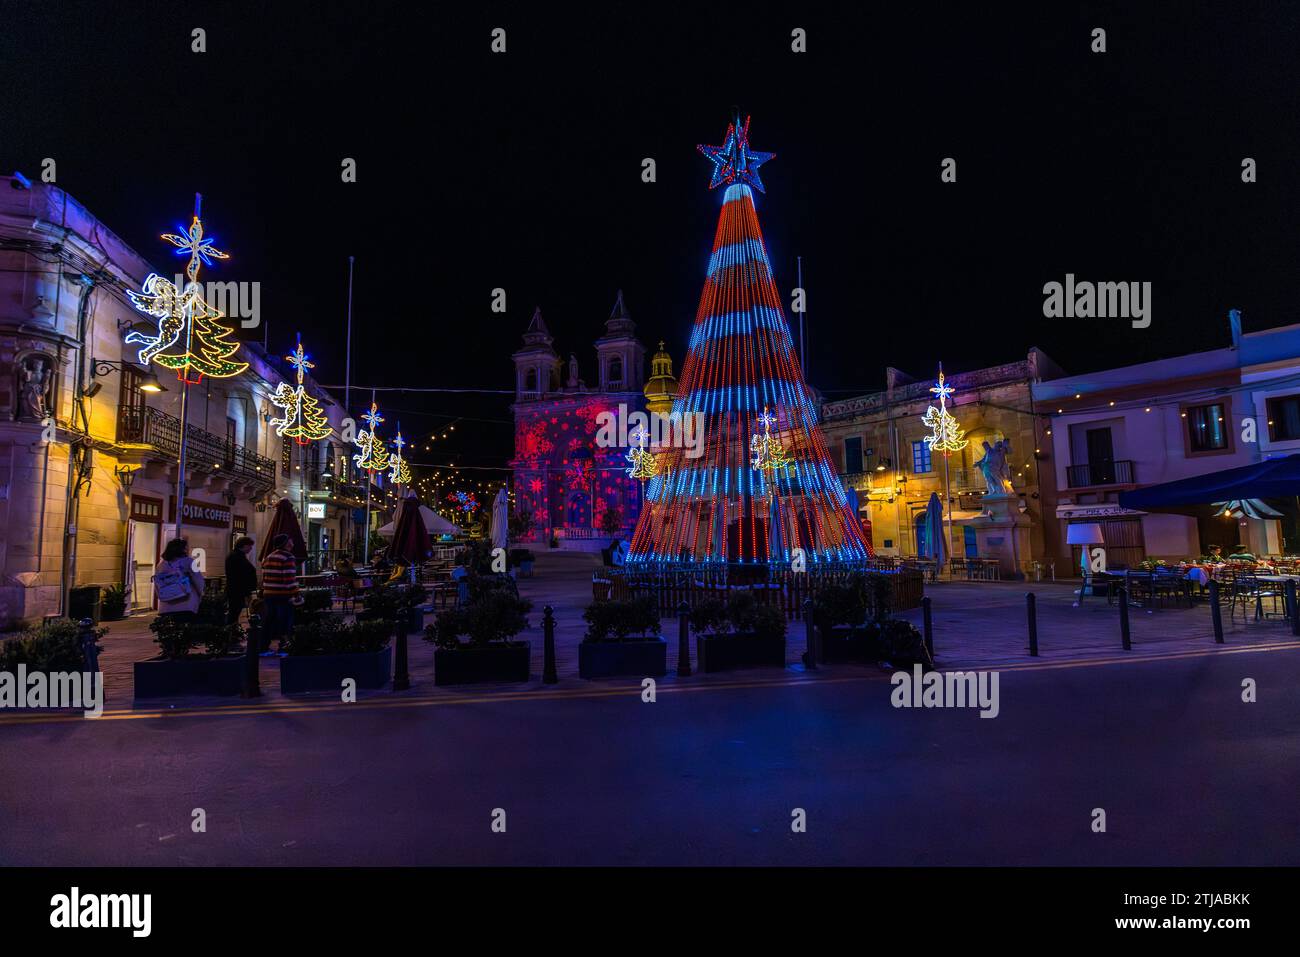 Lasershow auf einer Kirchenfassade und beleuchteter Weihnachtspyramide. Die Plätze in Malta werden vor Weihnachten in farbenfrohes Licht getaucht. Marsaxlokk, Malta Stockfoto